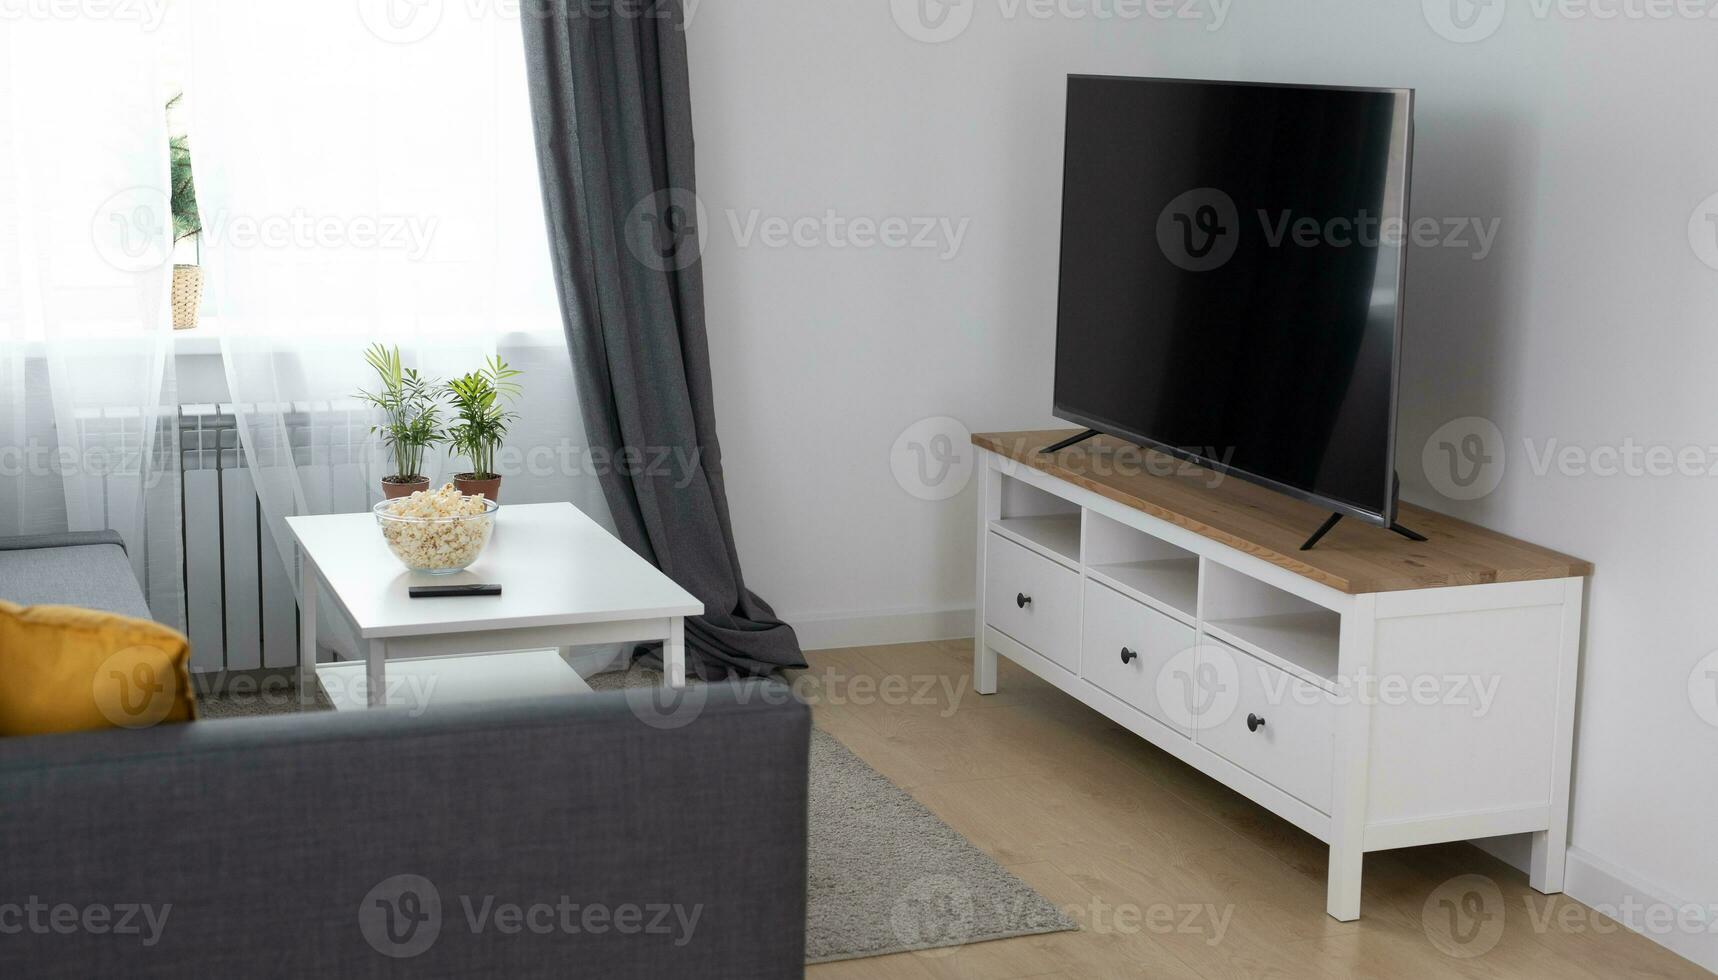 acogedor habitación interior con elegante mueble escandinavo estilo y decoración y moderno televisión conjunto - interior y cómodo hogar concepto foto